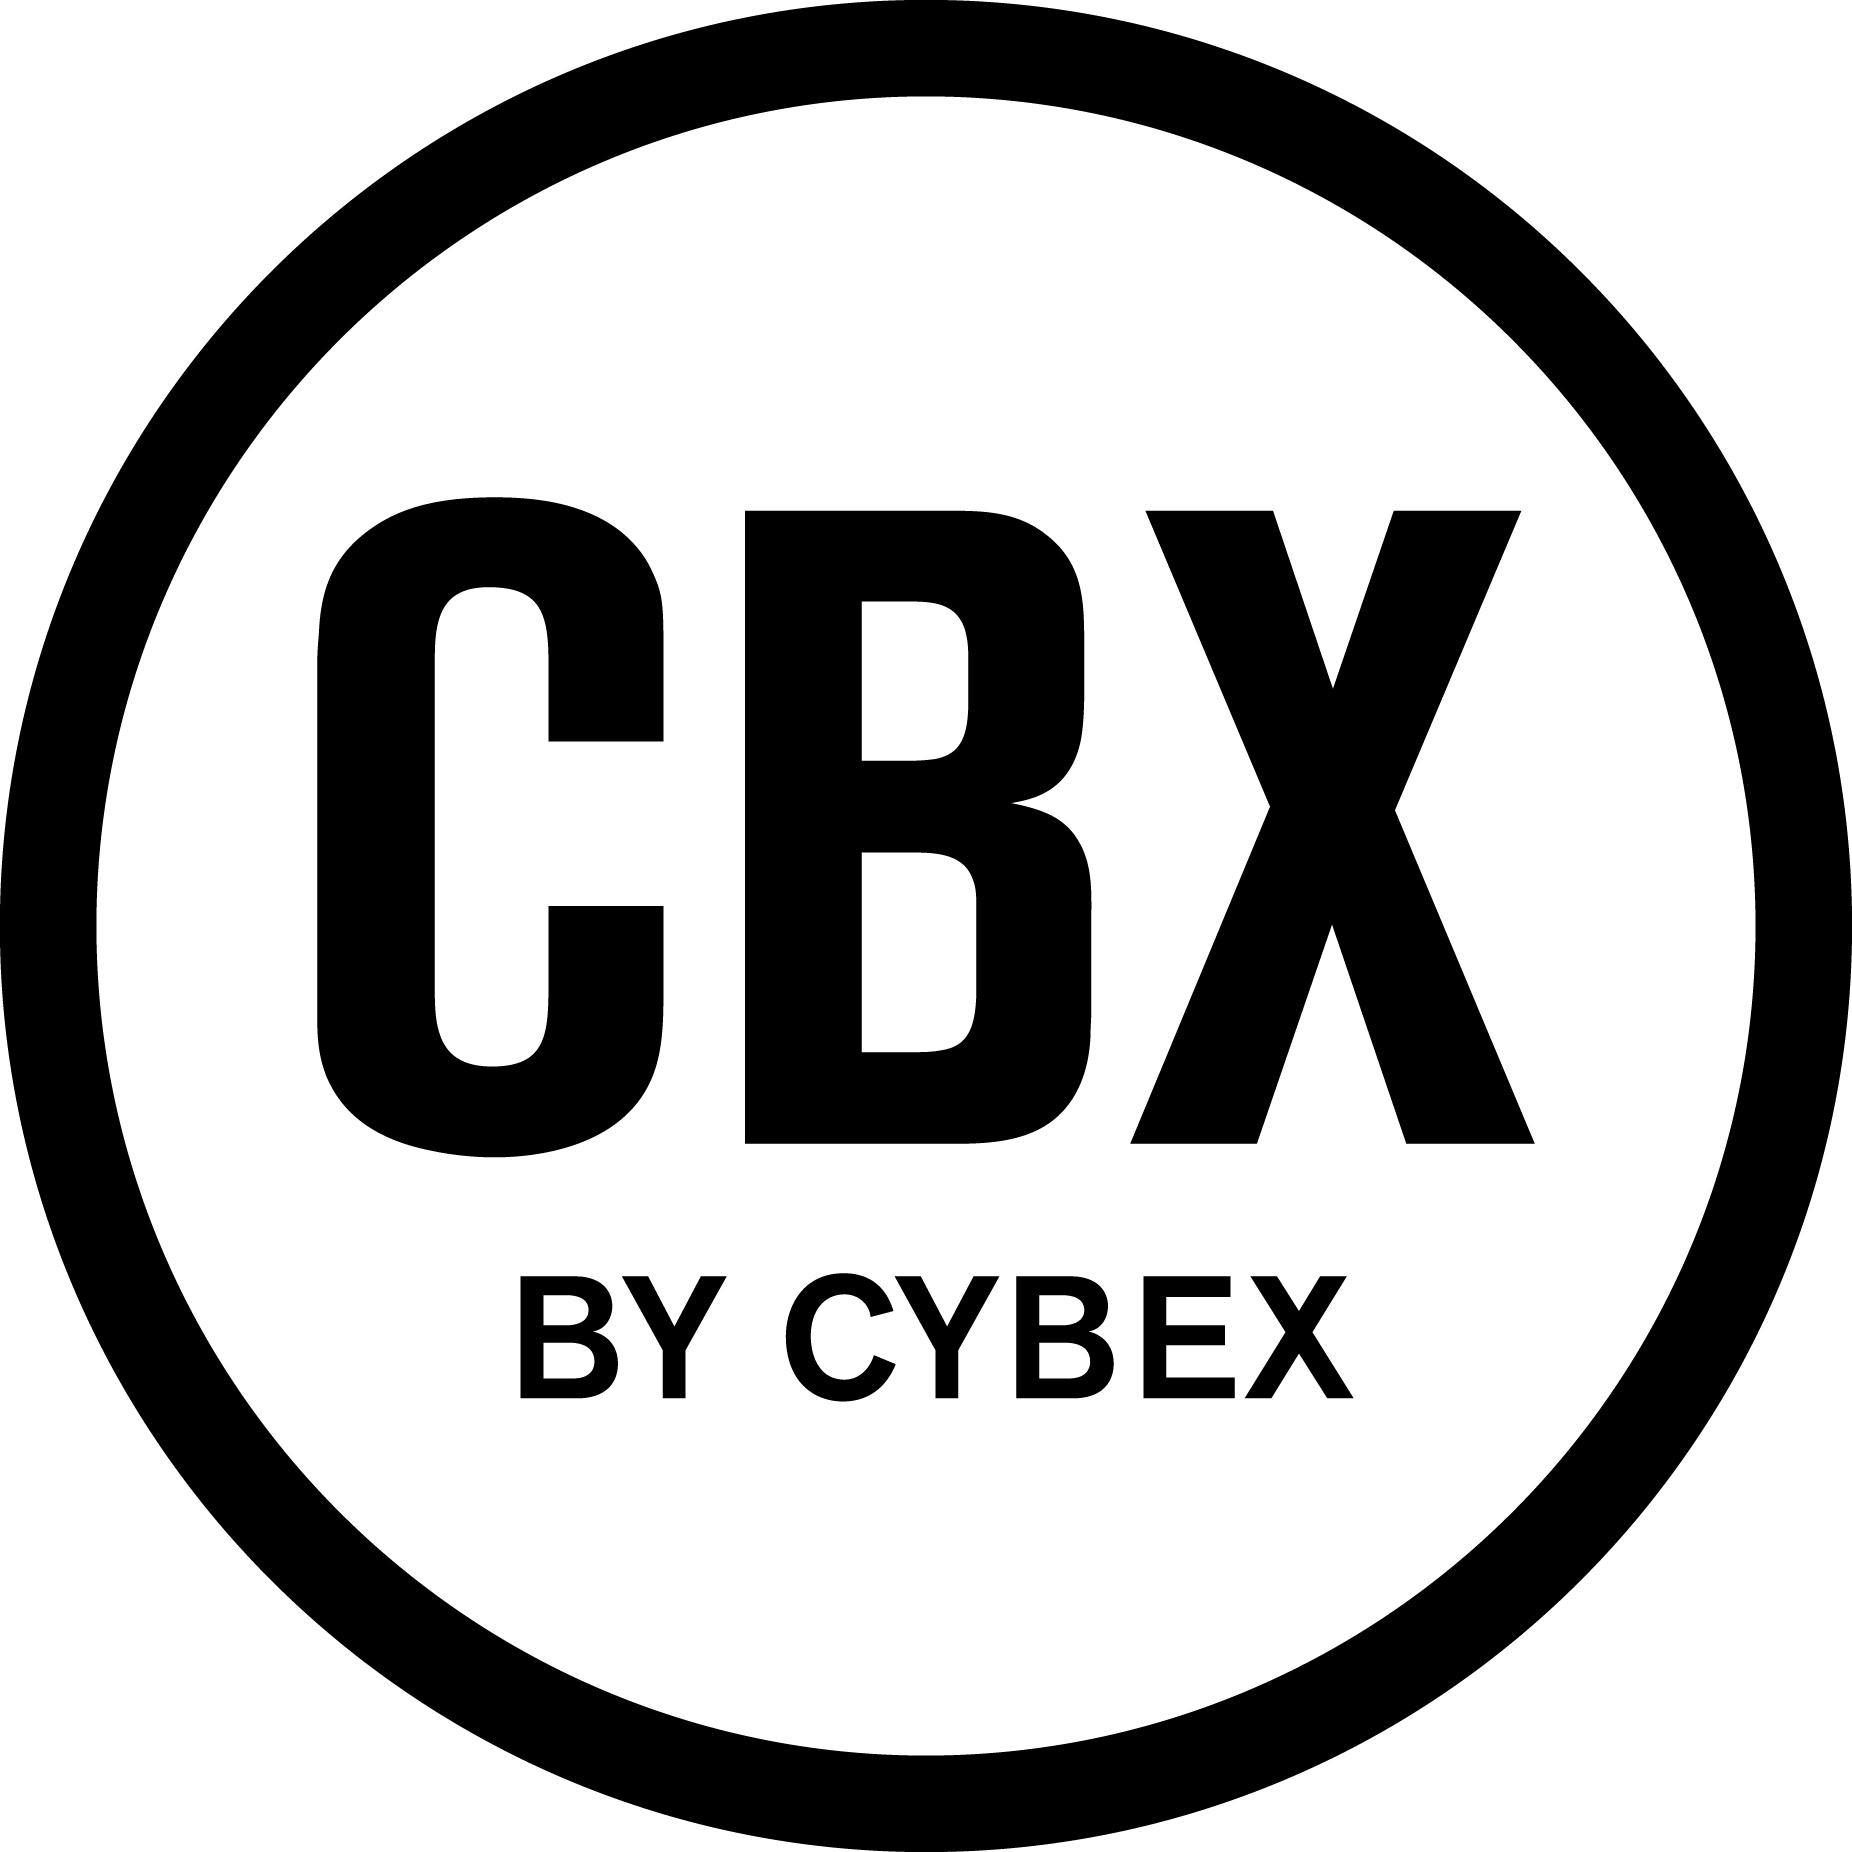 CBX od CYBEX